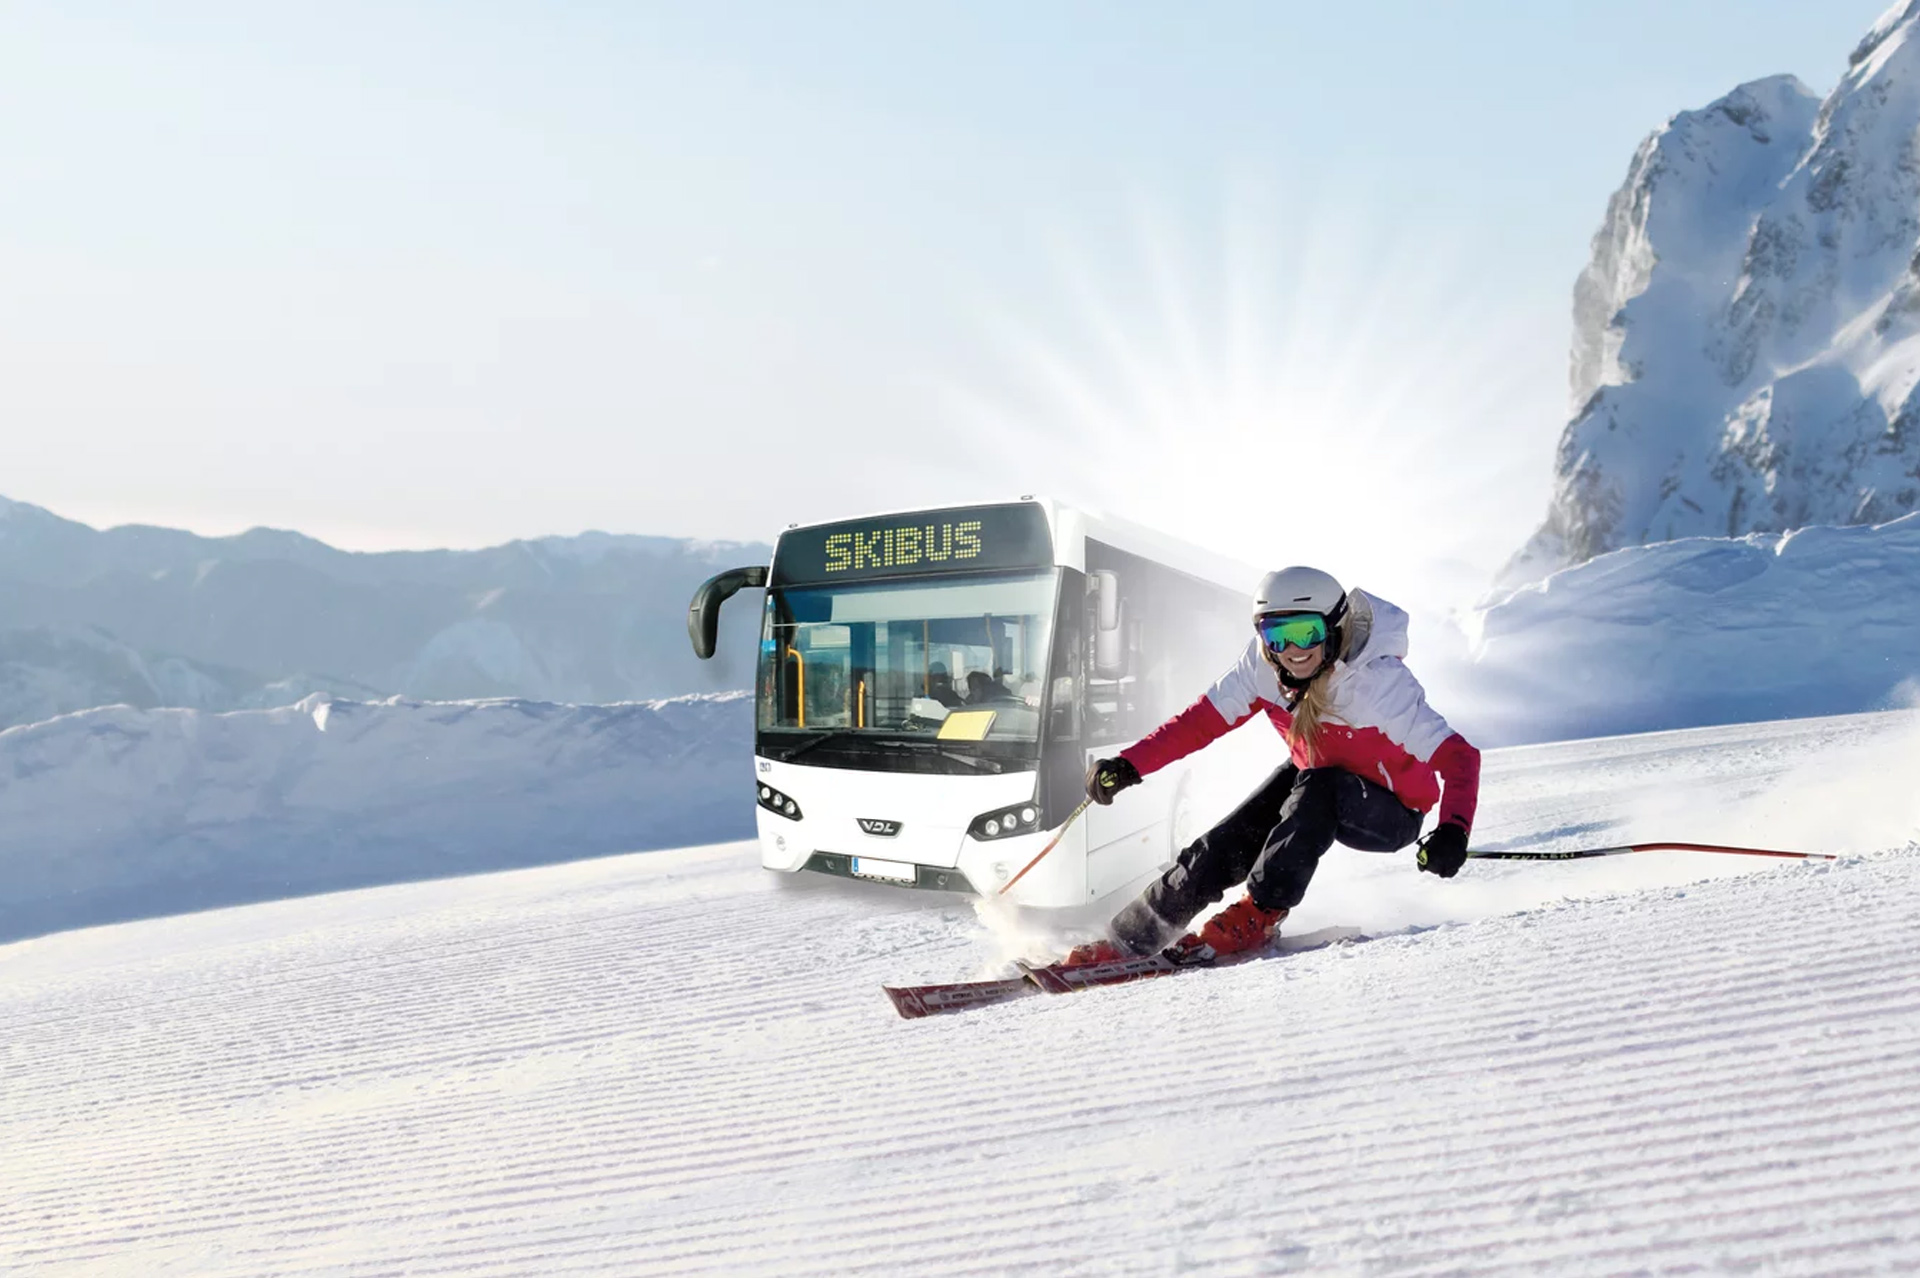 Chamrousse winter skibus mountain ski resort grenoble isere french alps france - © Nassfeld